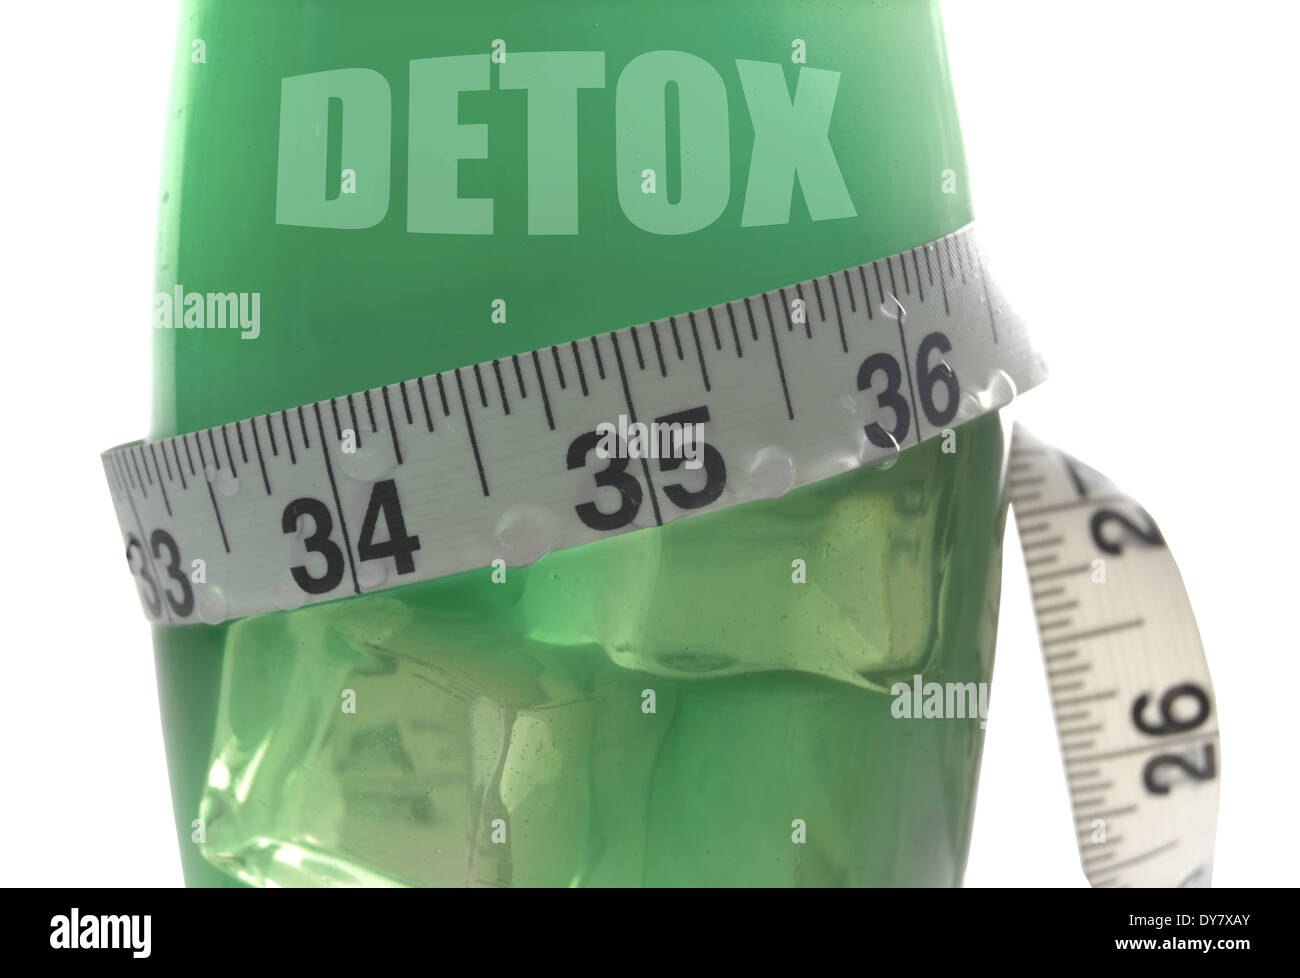 Detox juice Stock Photo